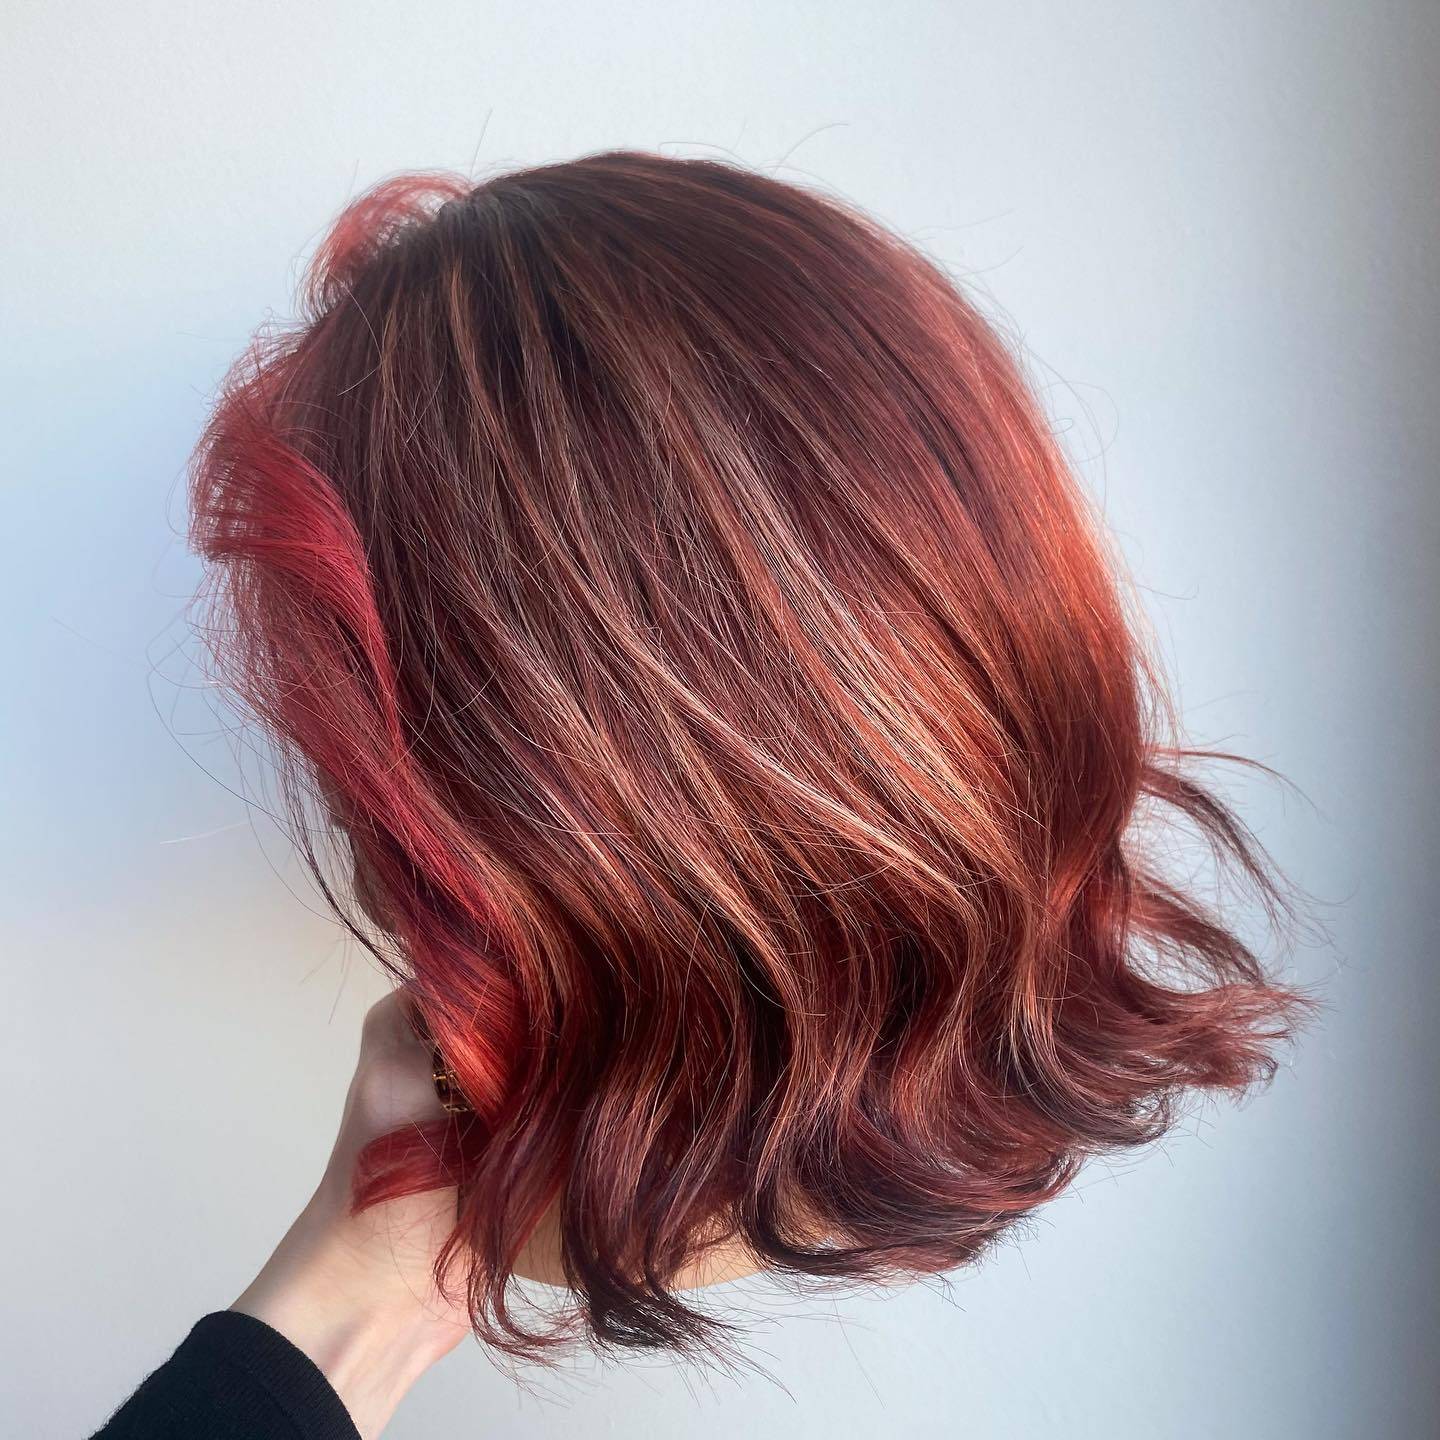 Burgundy hair color 171 burgundy hair color | burgundy hair color for women | burgundy hair color highlights Burgundy Hair Color